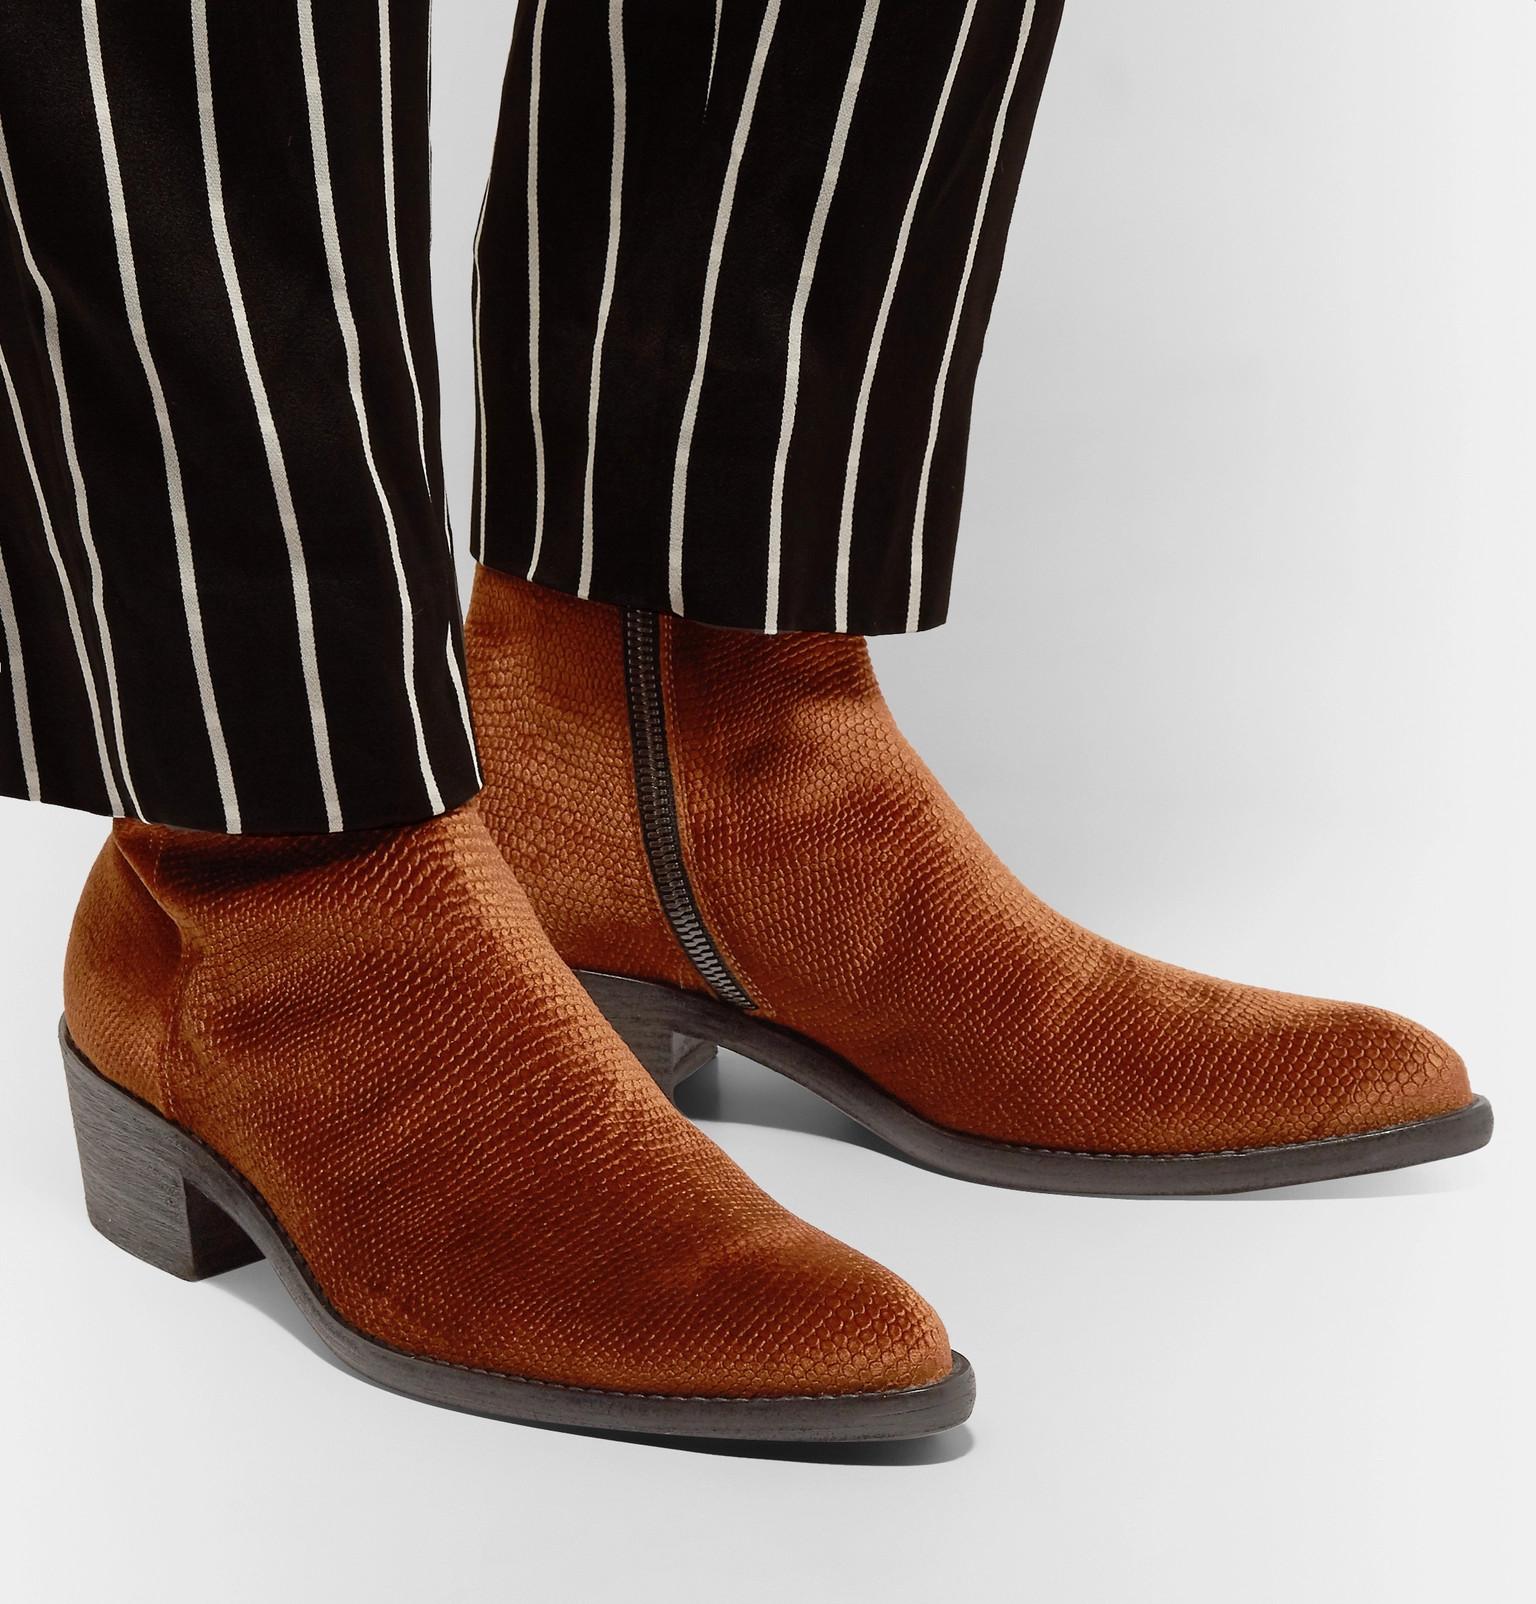 Buy > brown velvet boots > in stock